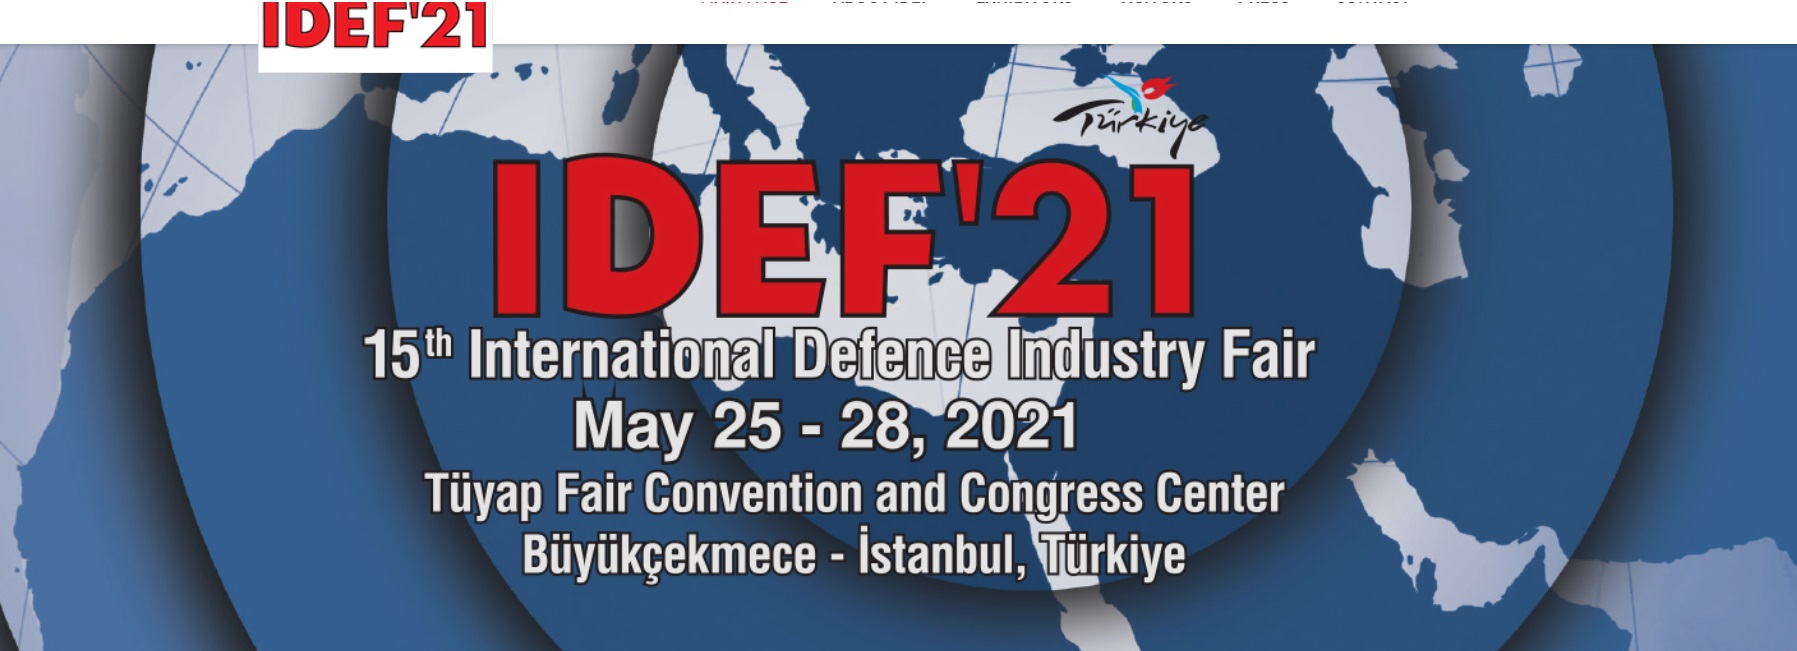 IDEF'21 se celebrará del 25 al 28 de mayo de 2021